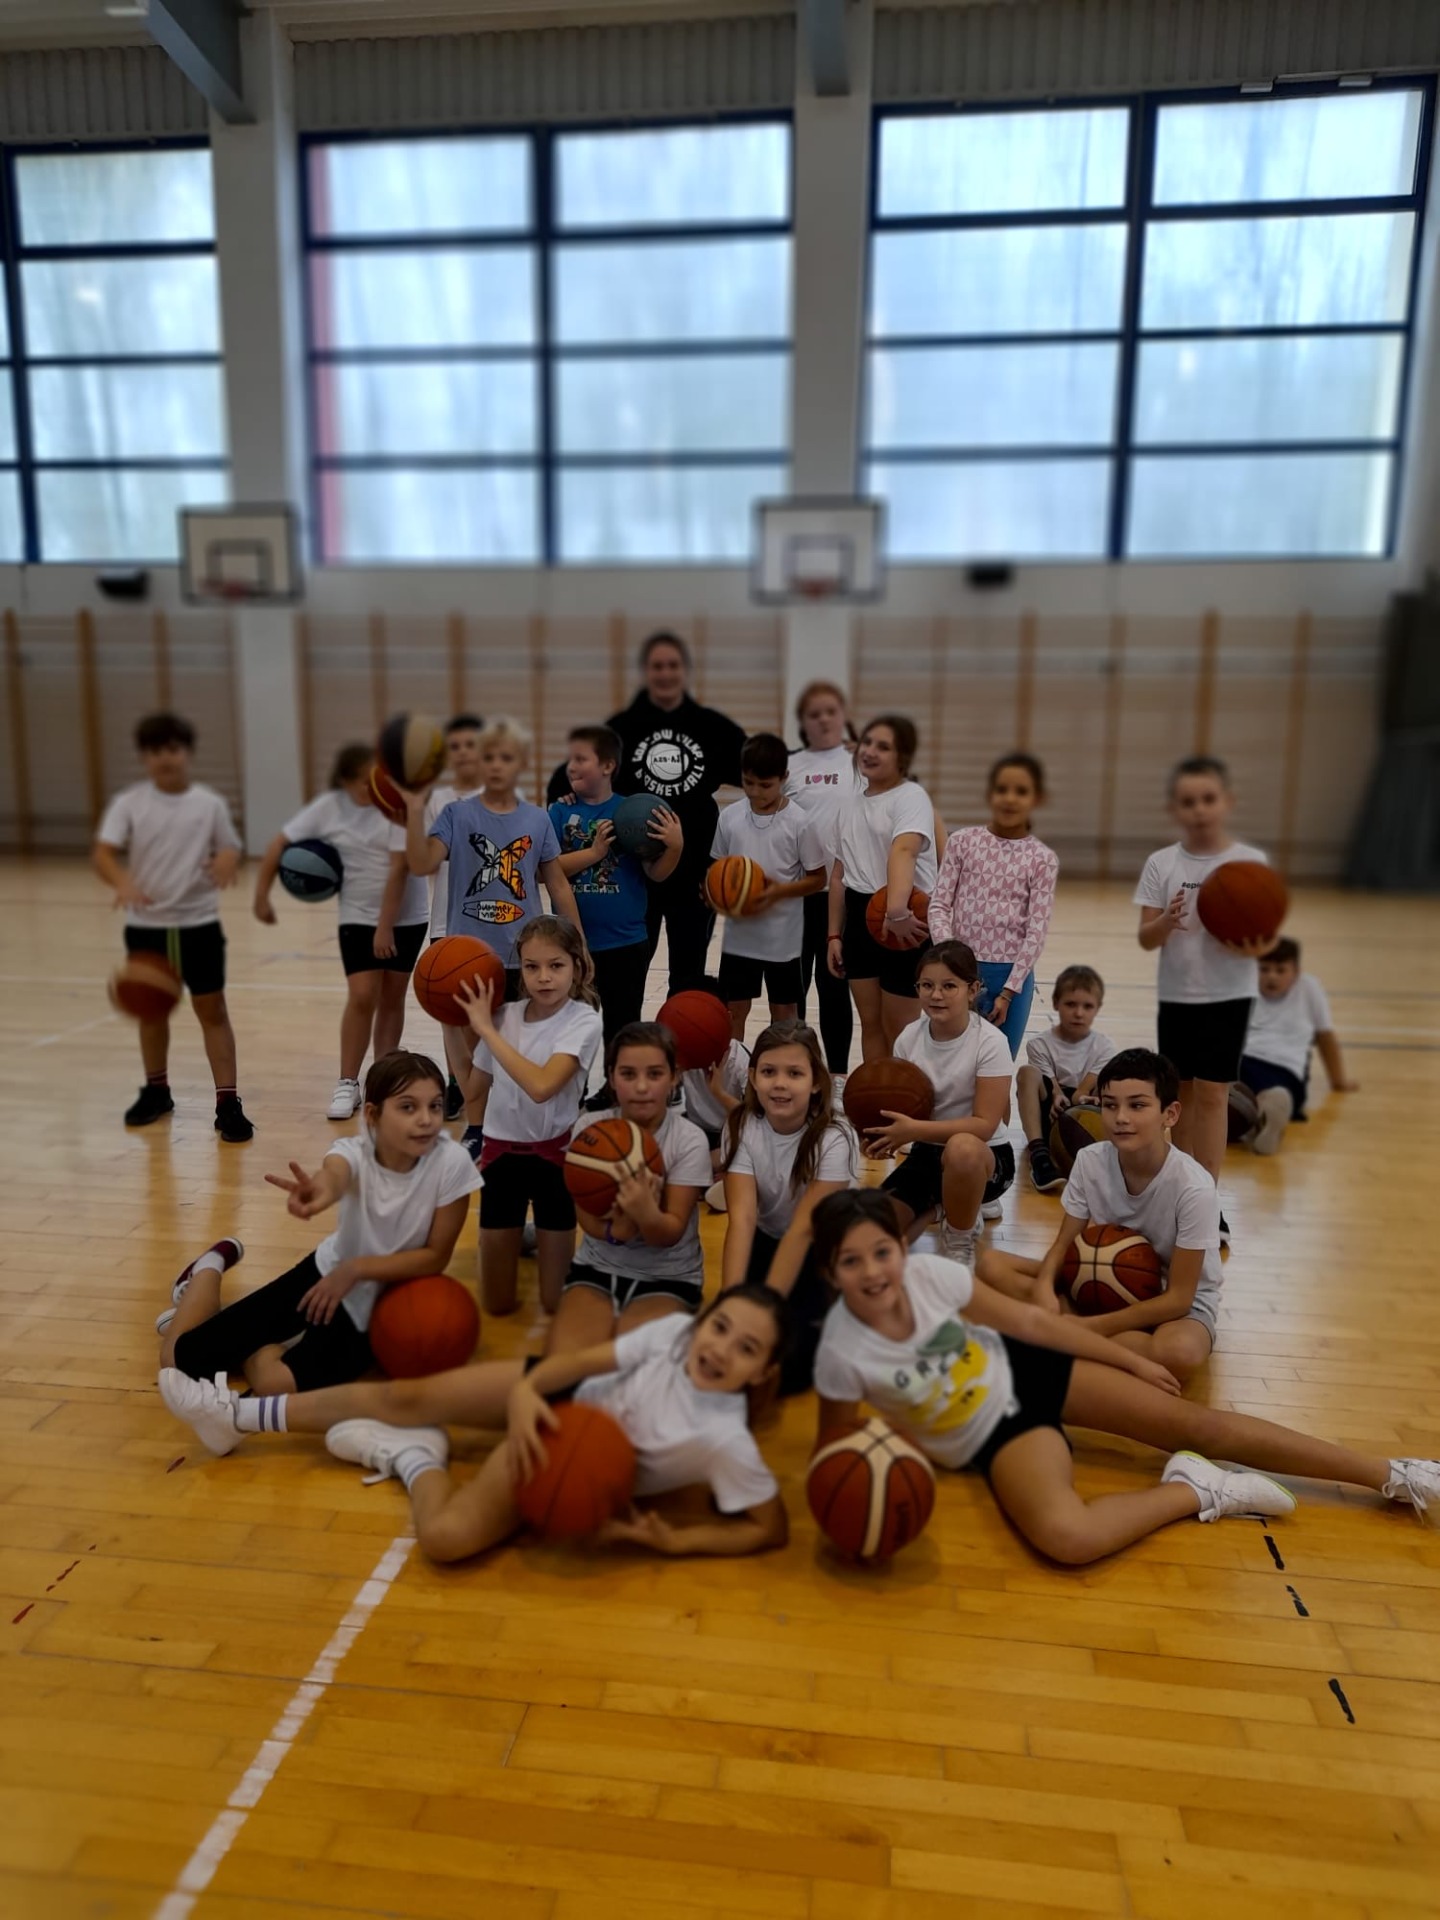 Grupa dzieci z trenerem koszykówki pozuje do zdjęcia na hali sportowej